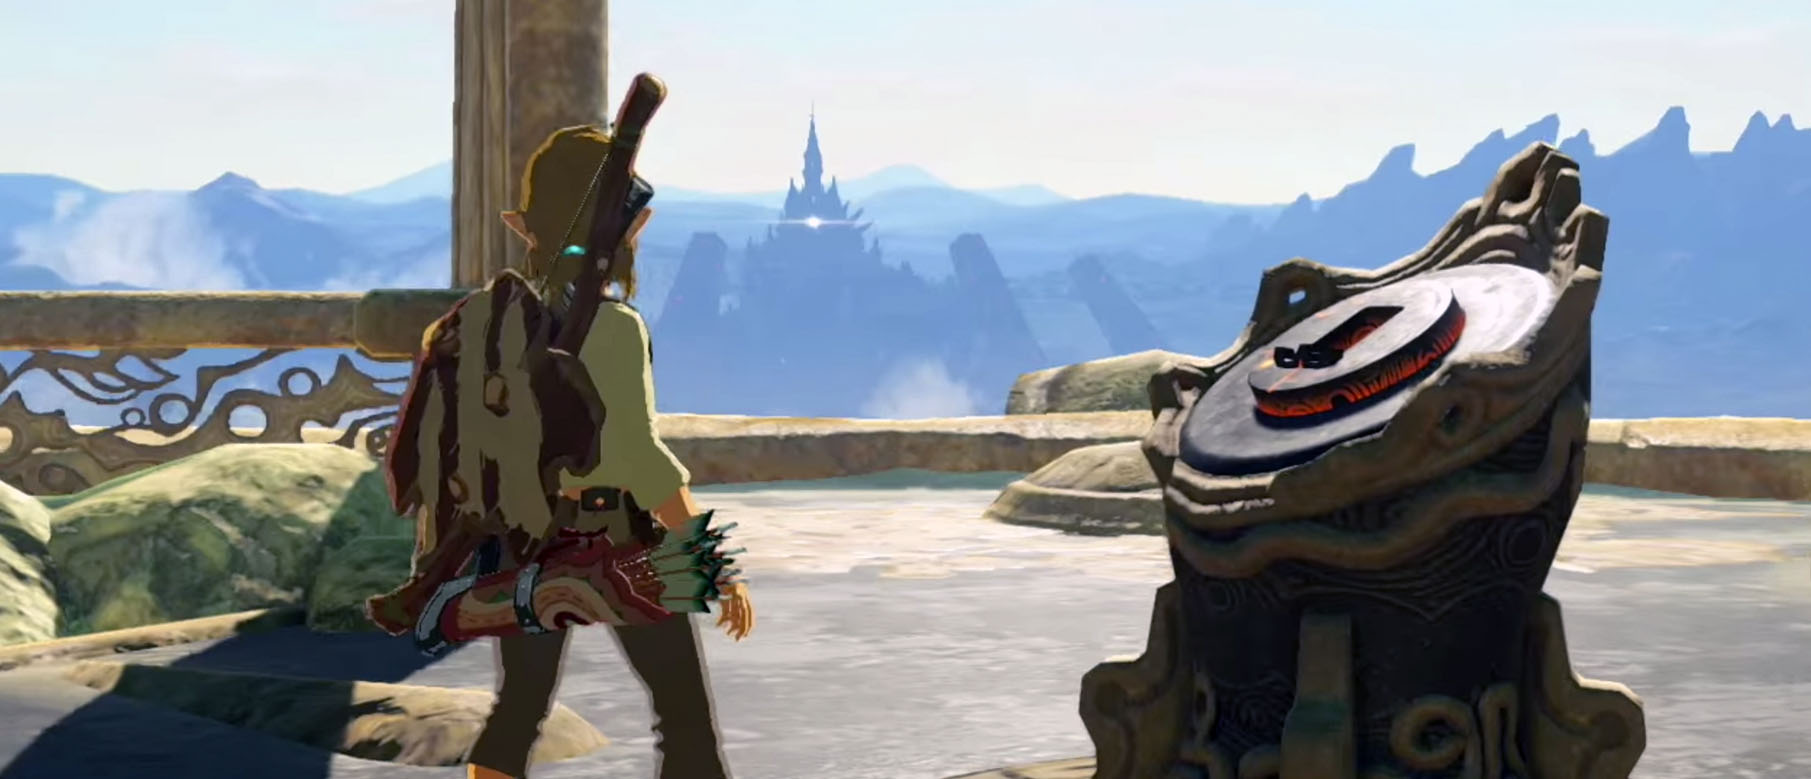 Изображение к Слух: The Legend of Zelda Breath of the Wild не выйдет одновременно с Nintendo Switch